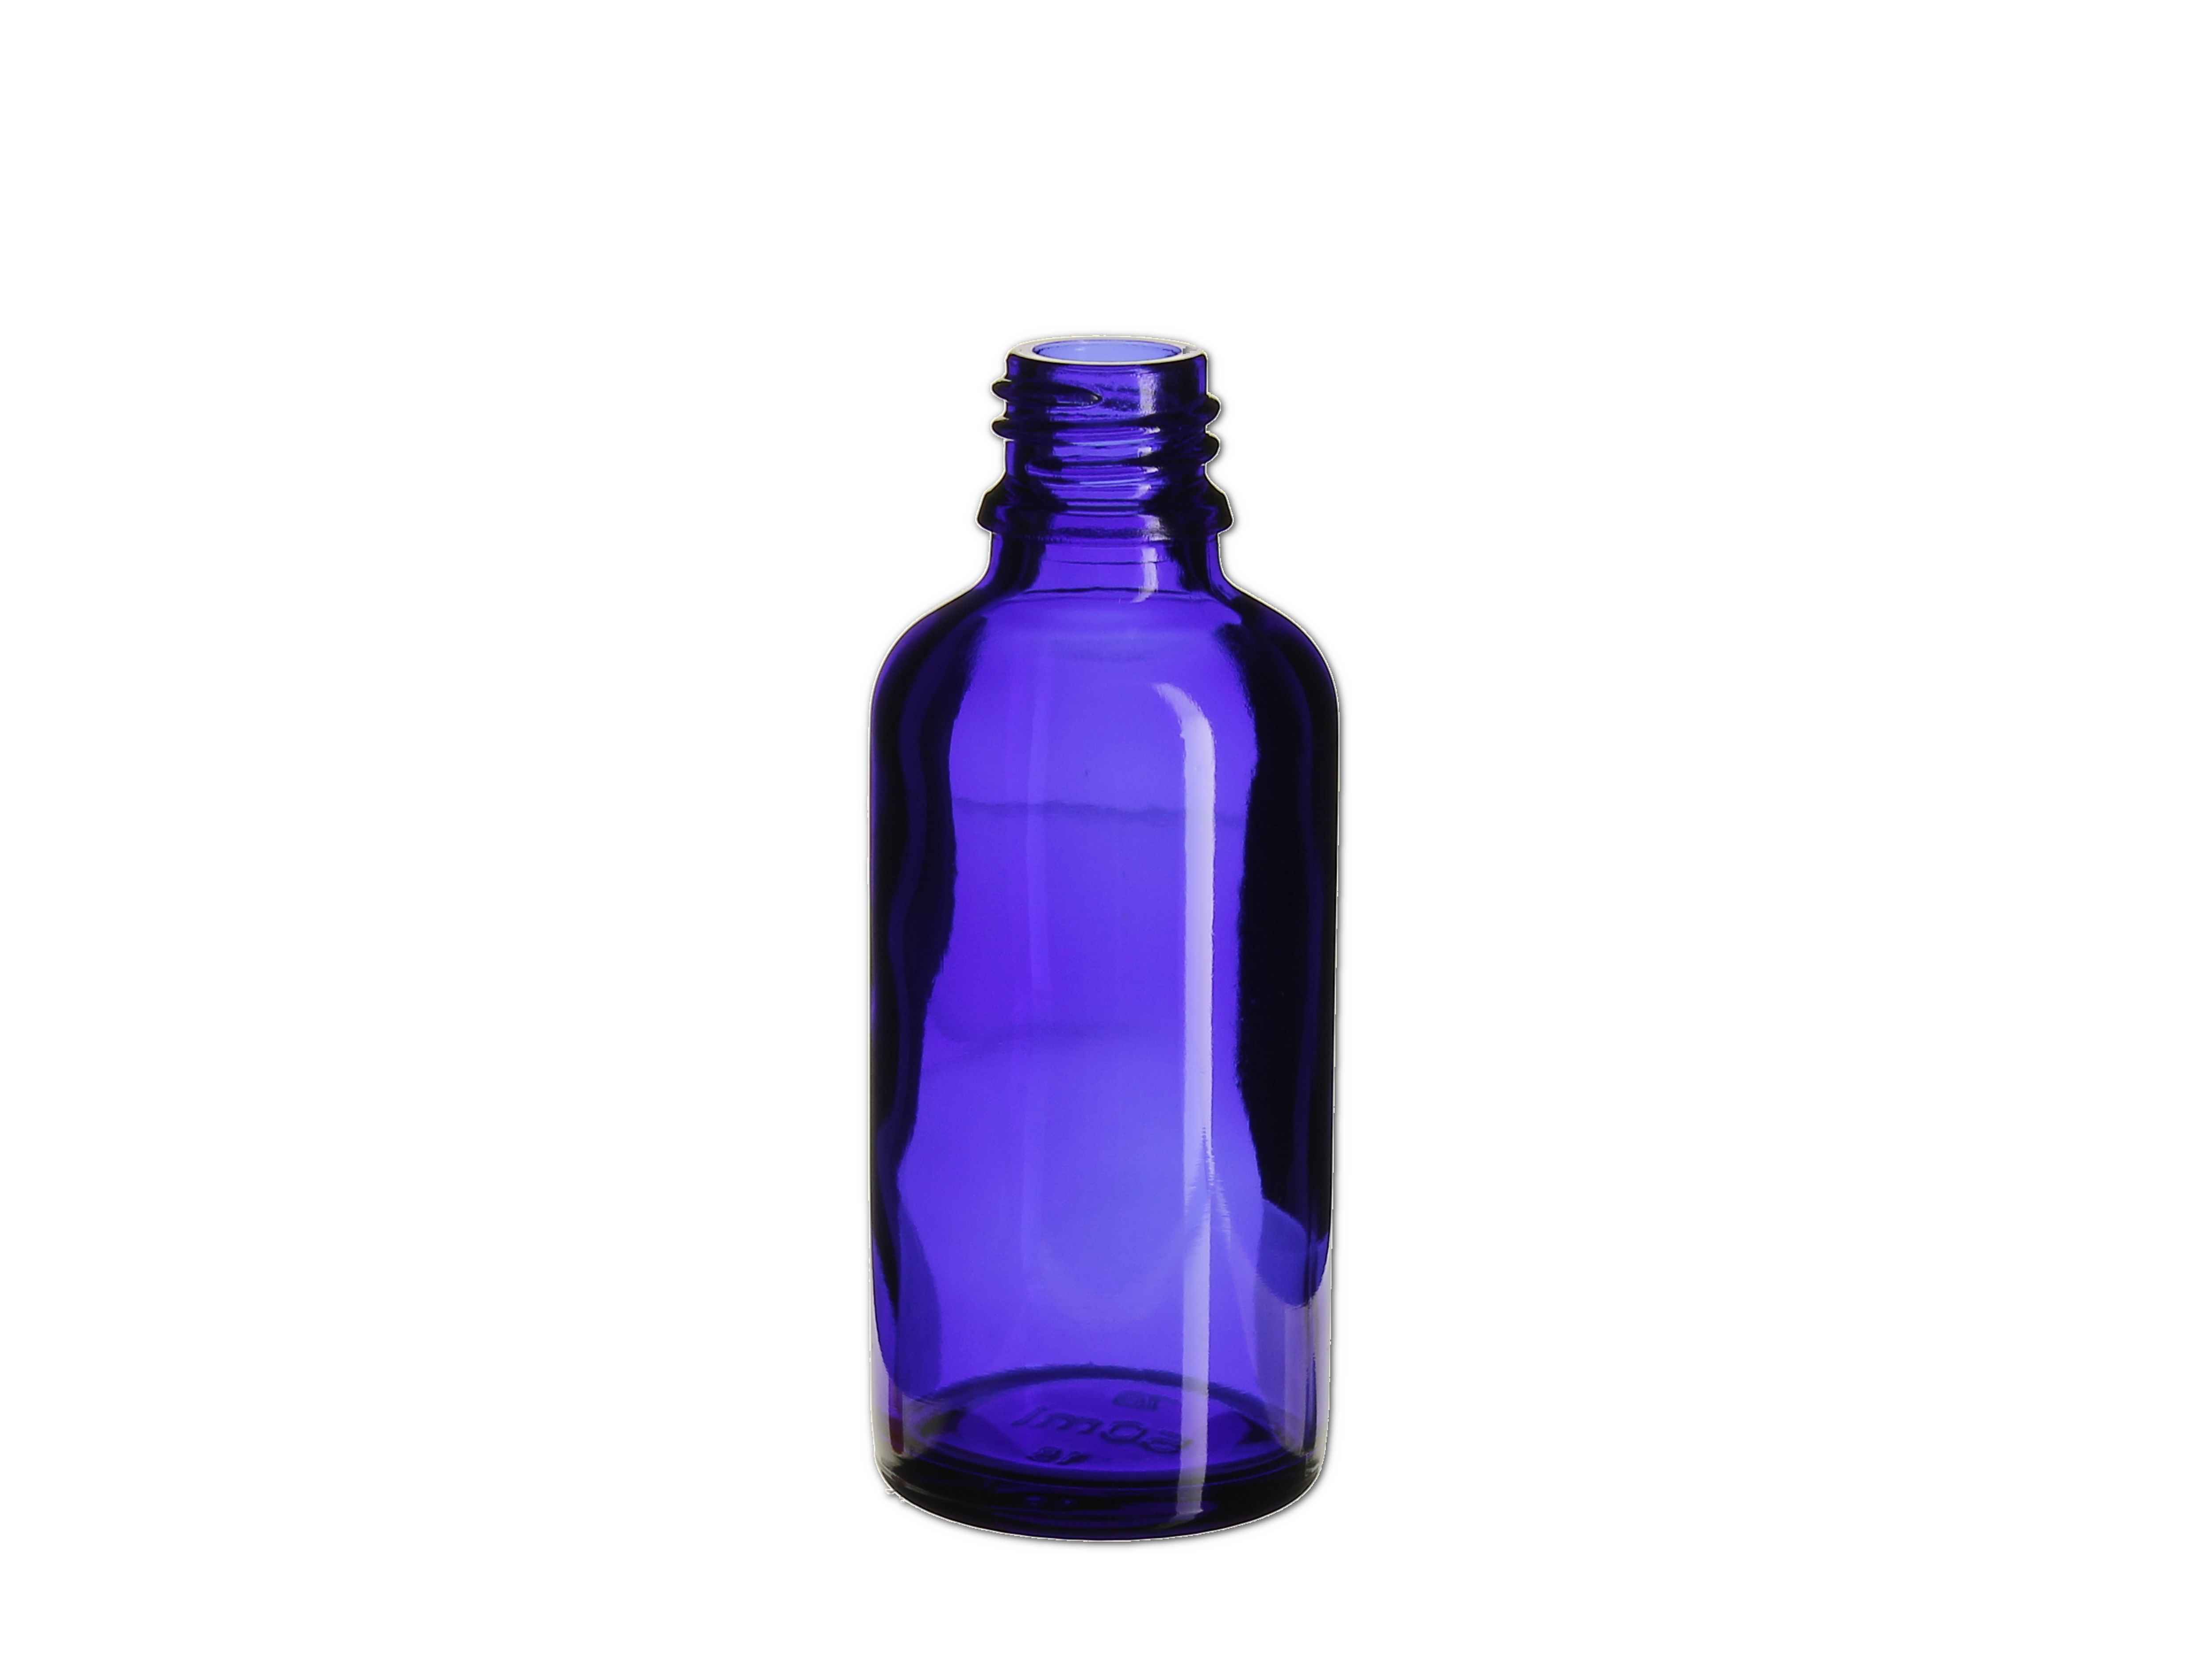    Flasche blau - GL18 - 50ml